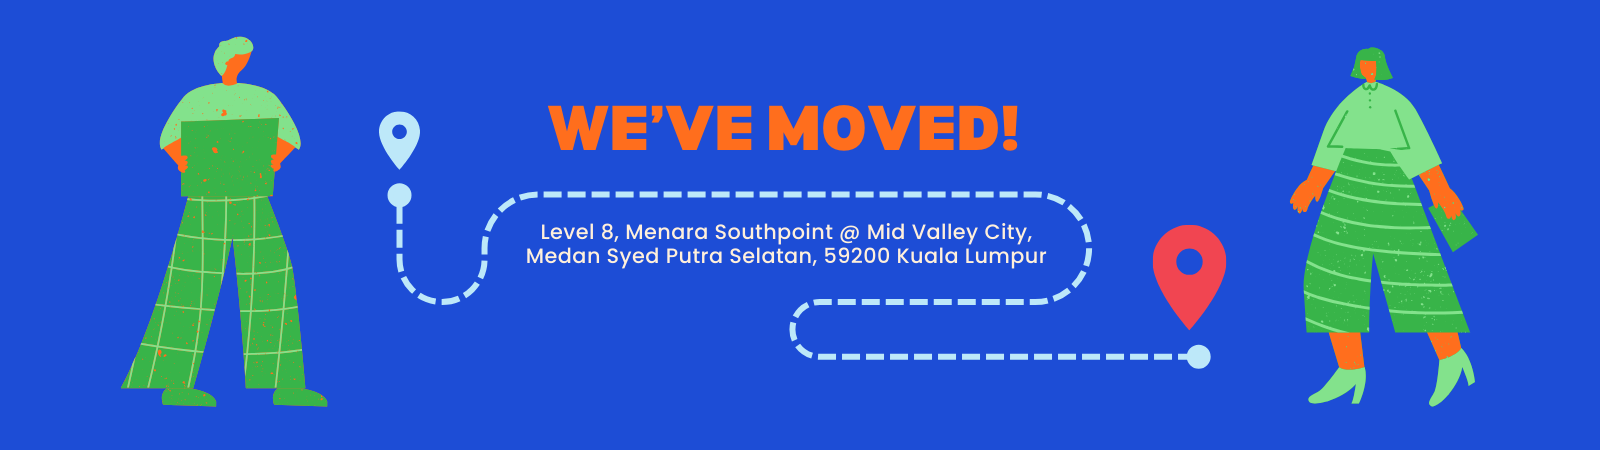 We've Moved!